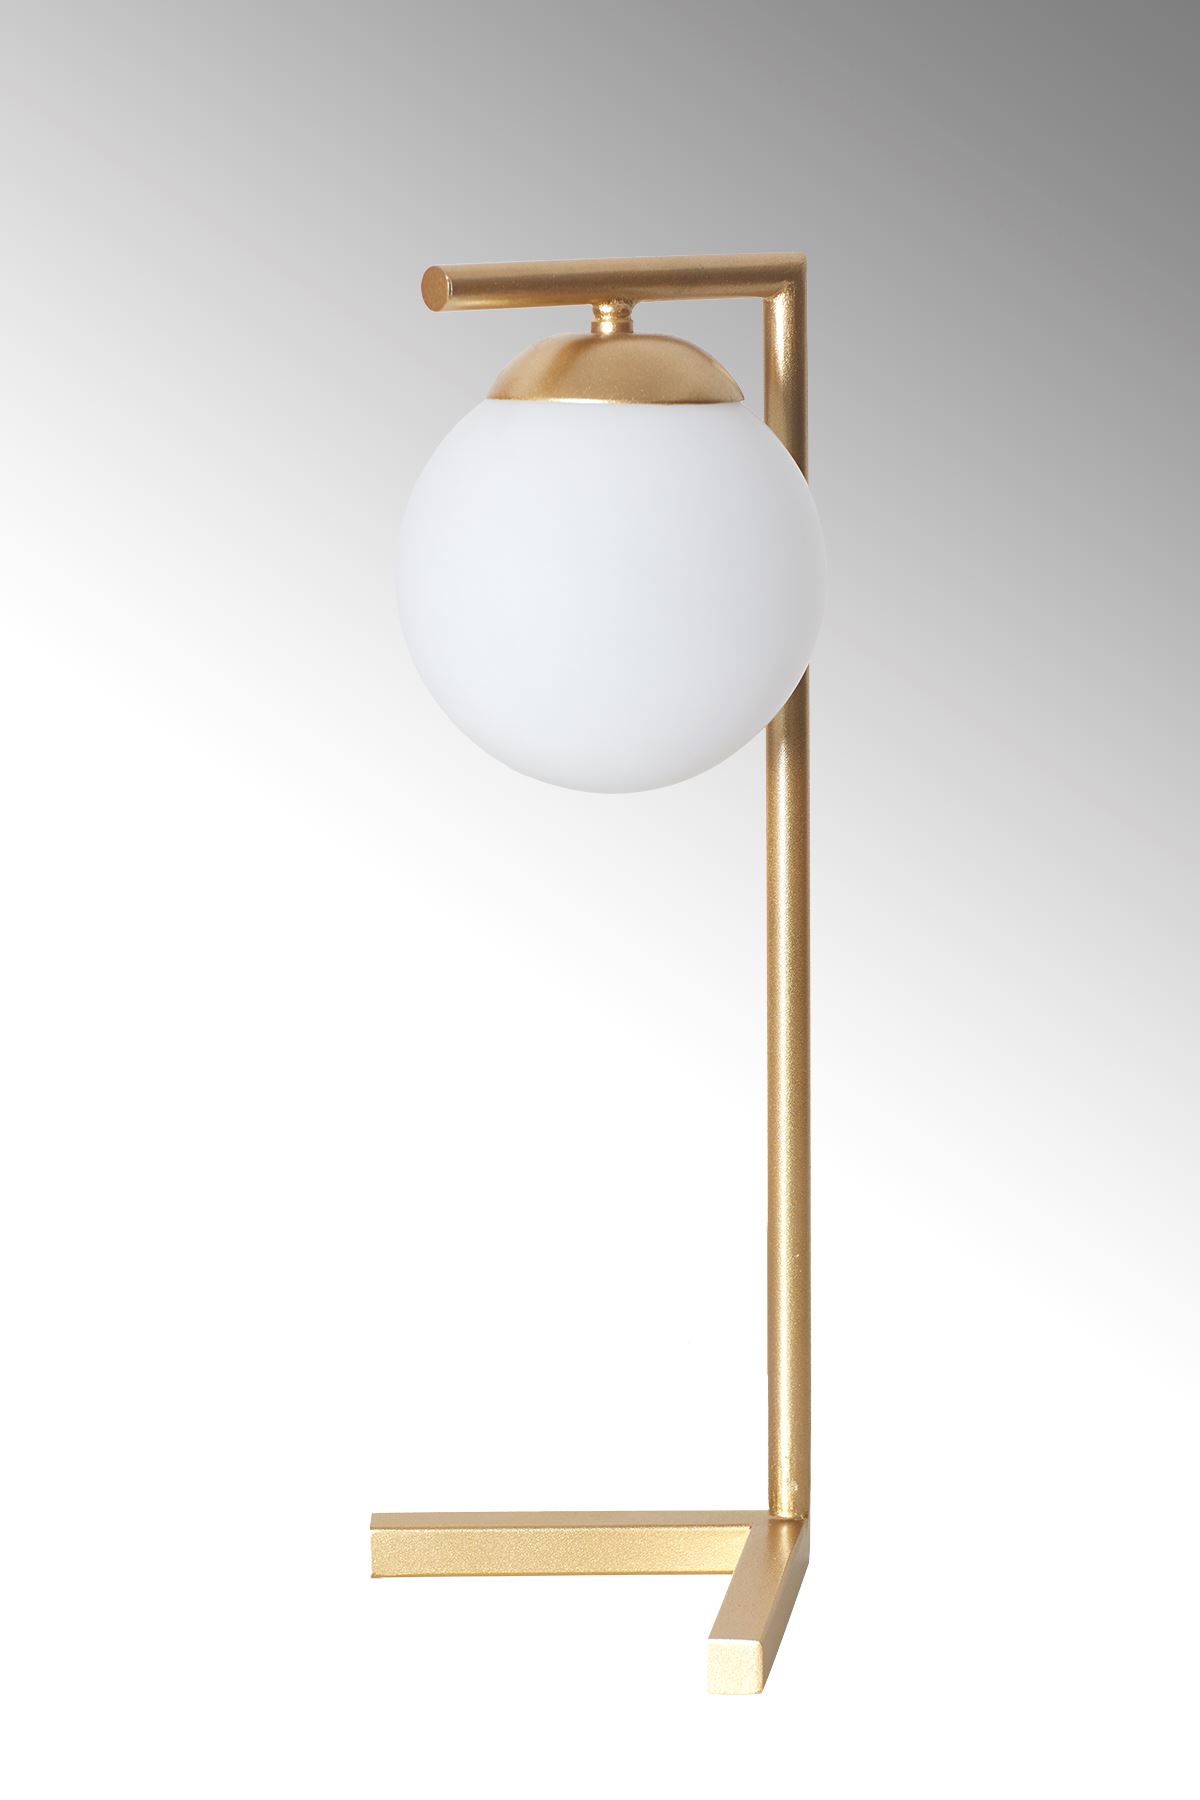 Linda Sarı Metal Gövde Beyaz Camlı Tasarım Lüx Masa Lambası